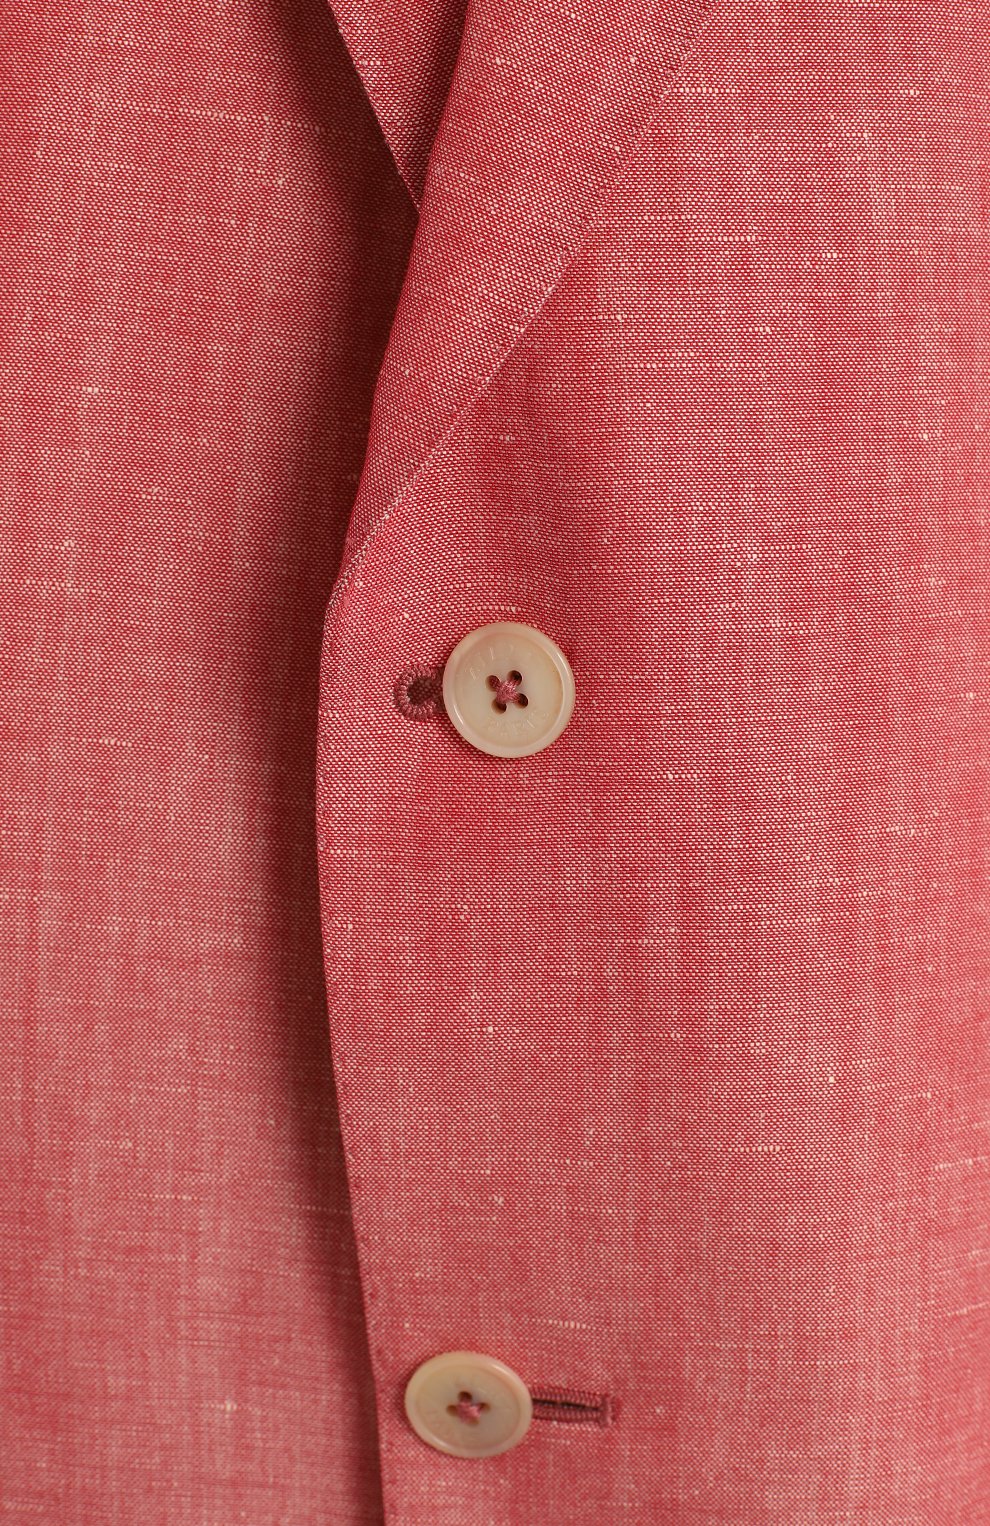 Пиджак изо льна и шерсти | Zilli | Розовый - 3